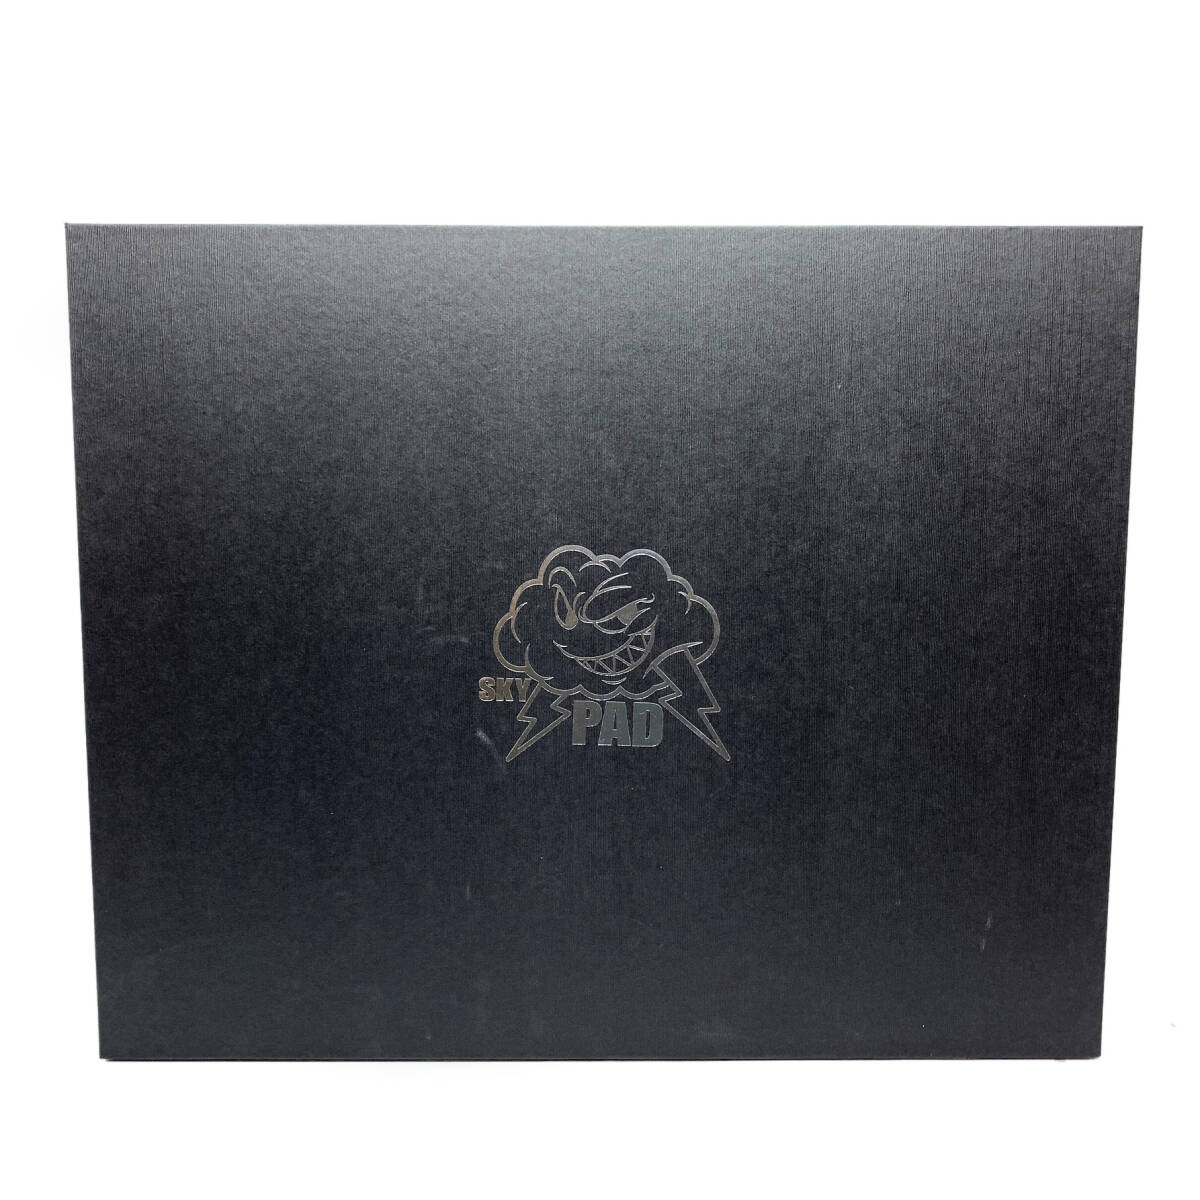 tu099 SKY PAD Sky накладка 3.0 XL черный ge-ming стекло коврик для мыши Logo VERSION * б/у 